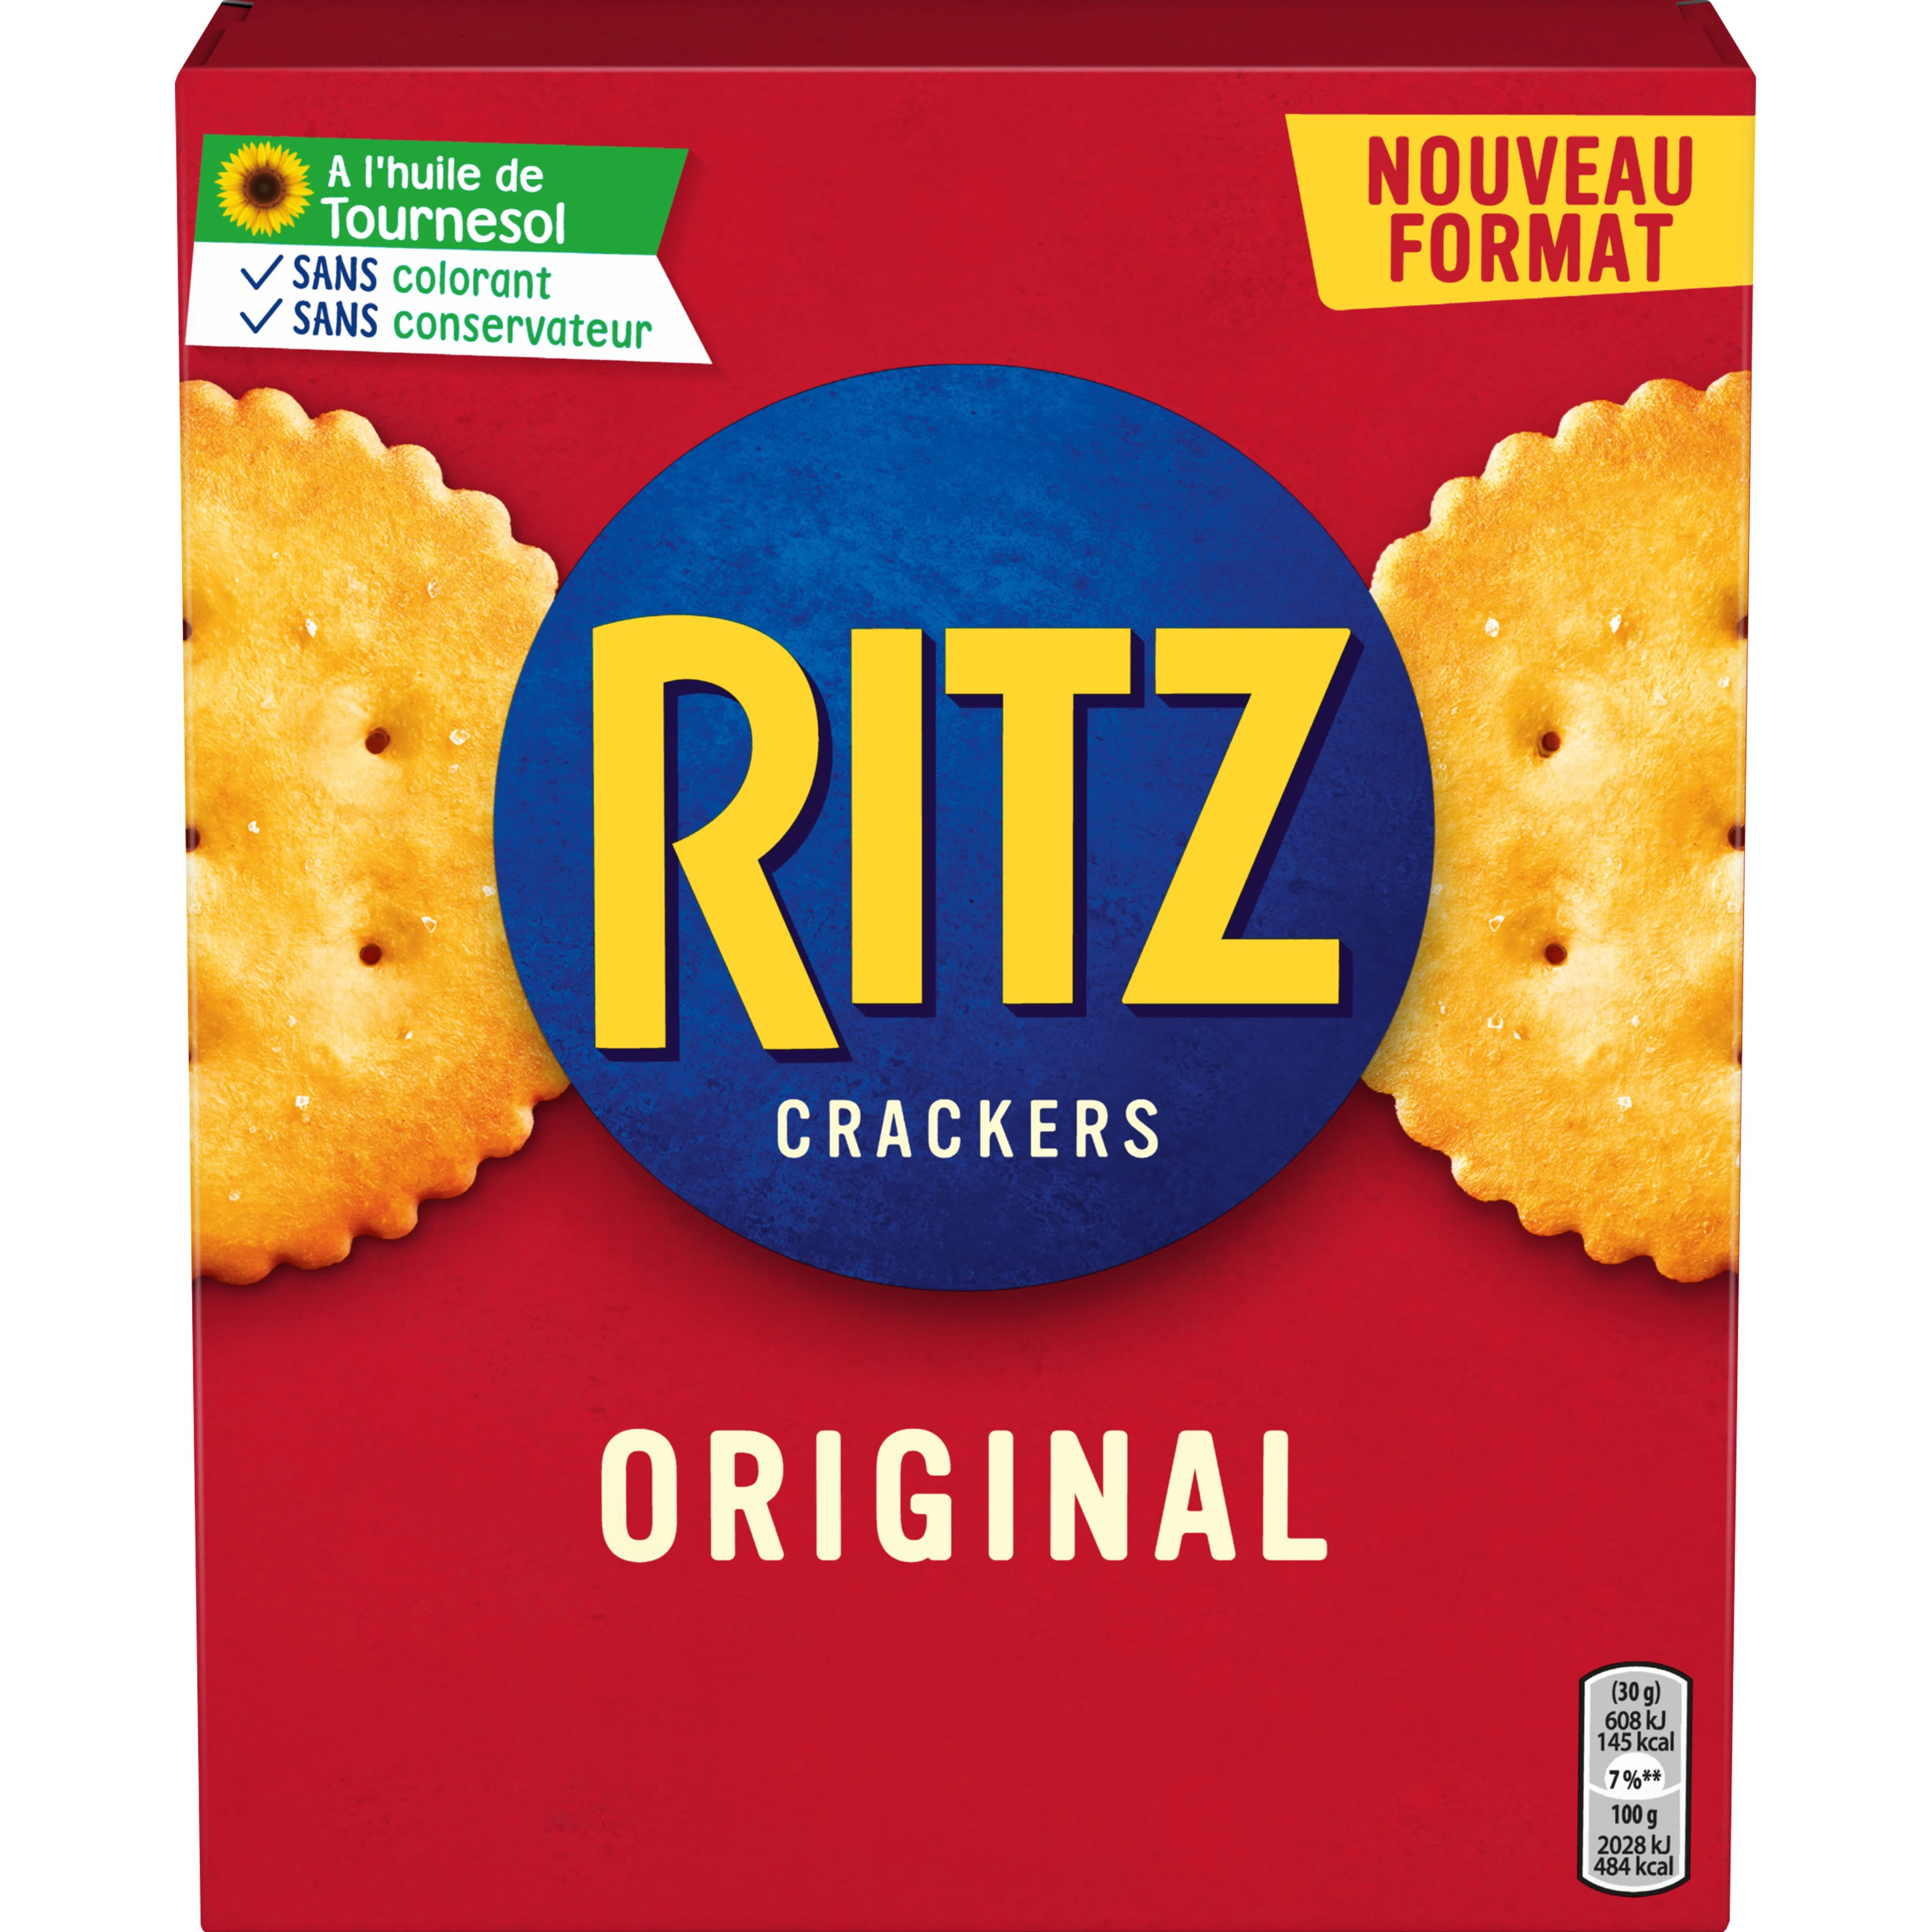 Crackers Original Aperitif Biscuits, 200g -  RITZ